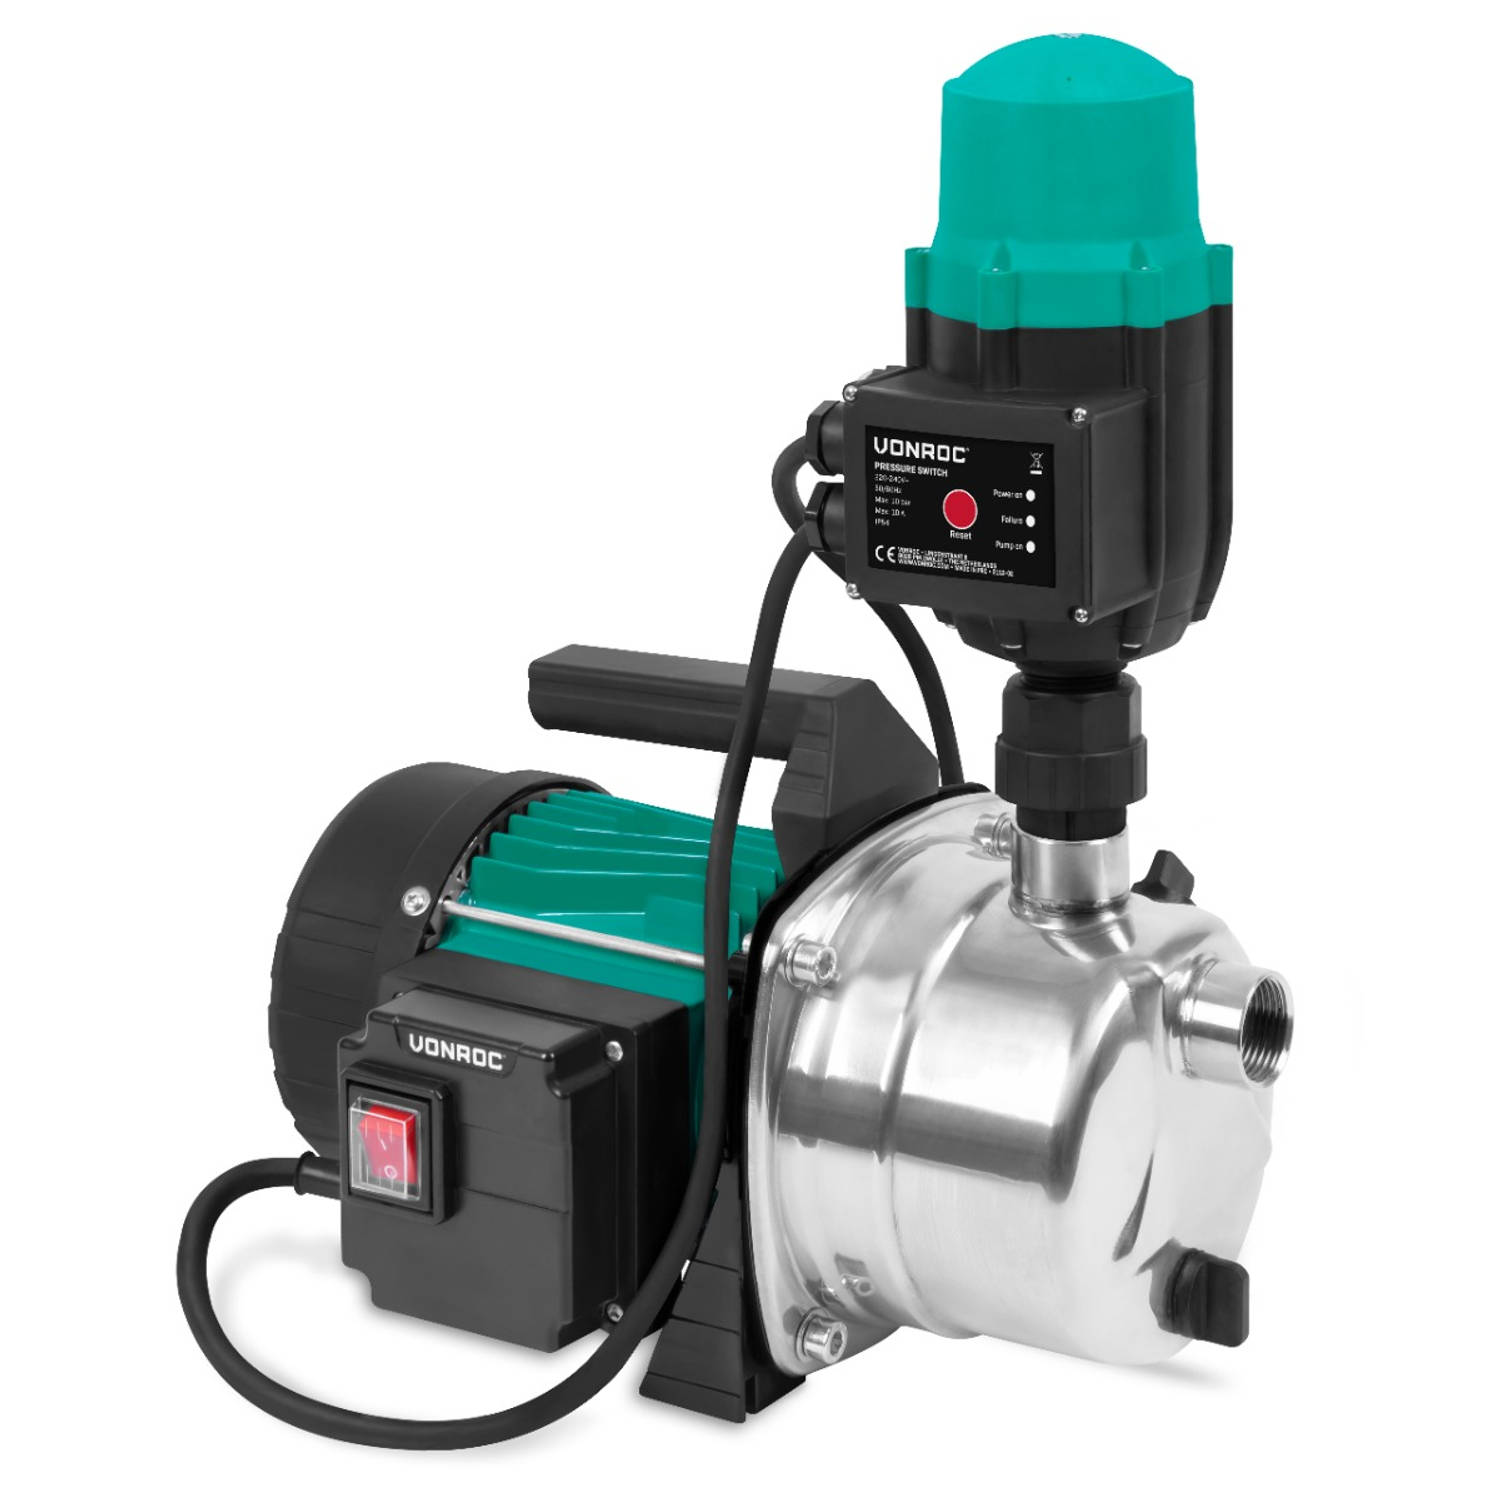 VONROC Hydrofoorpomp / Automatische pomp - 1000W - 3500l/h - Met drukschakelaar - droogloopbeveiliging - Voor besproeien en huishoudwater